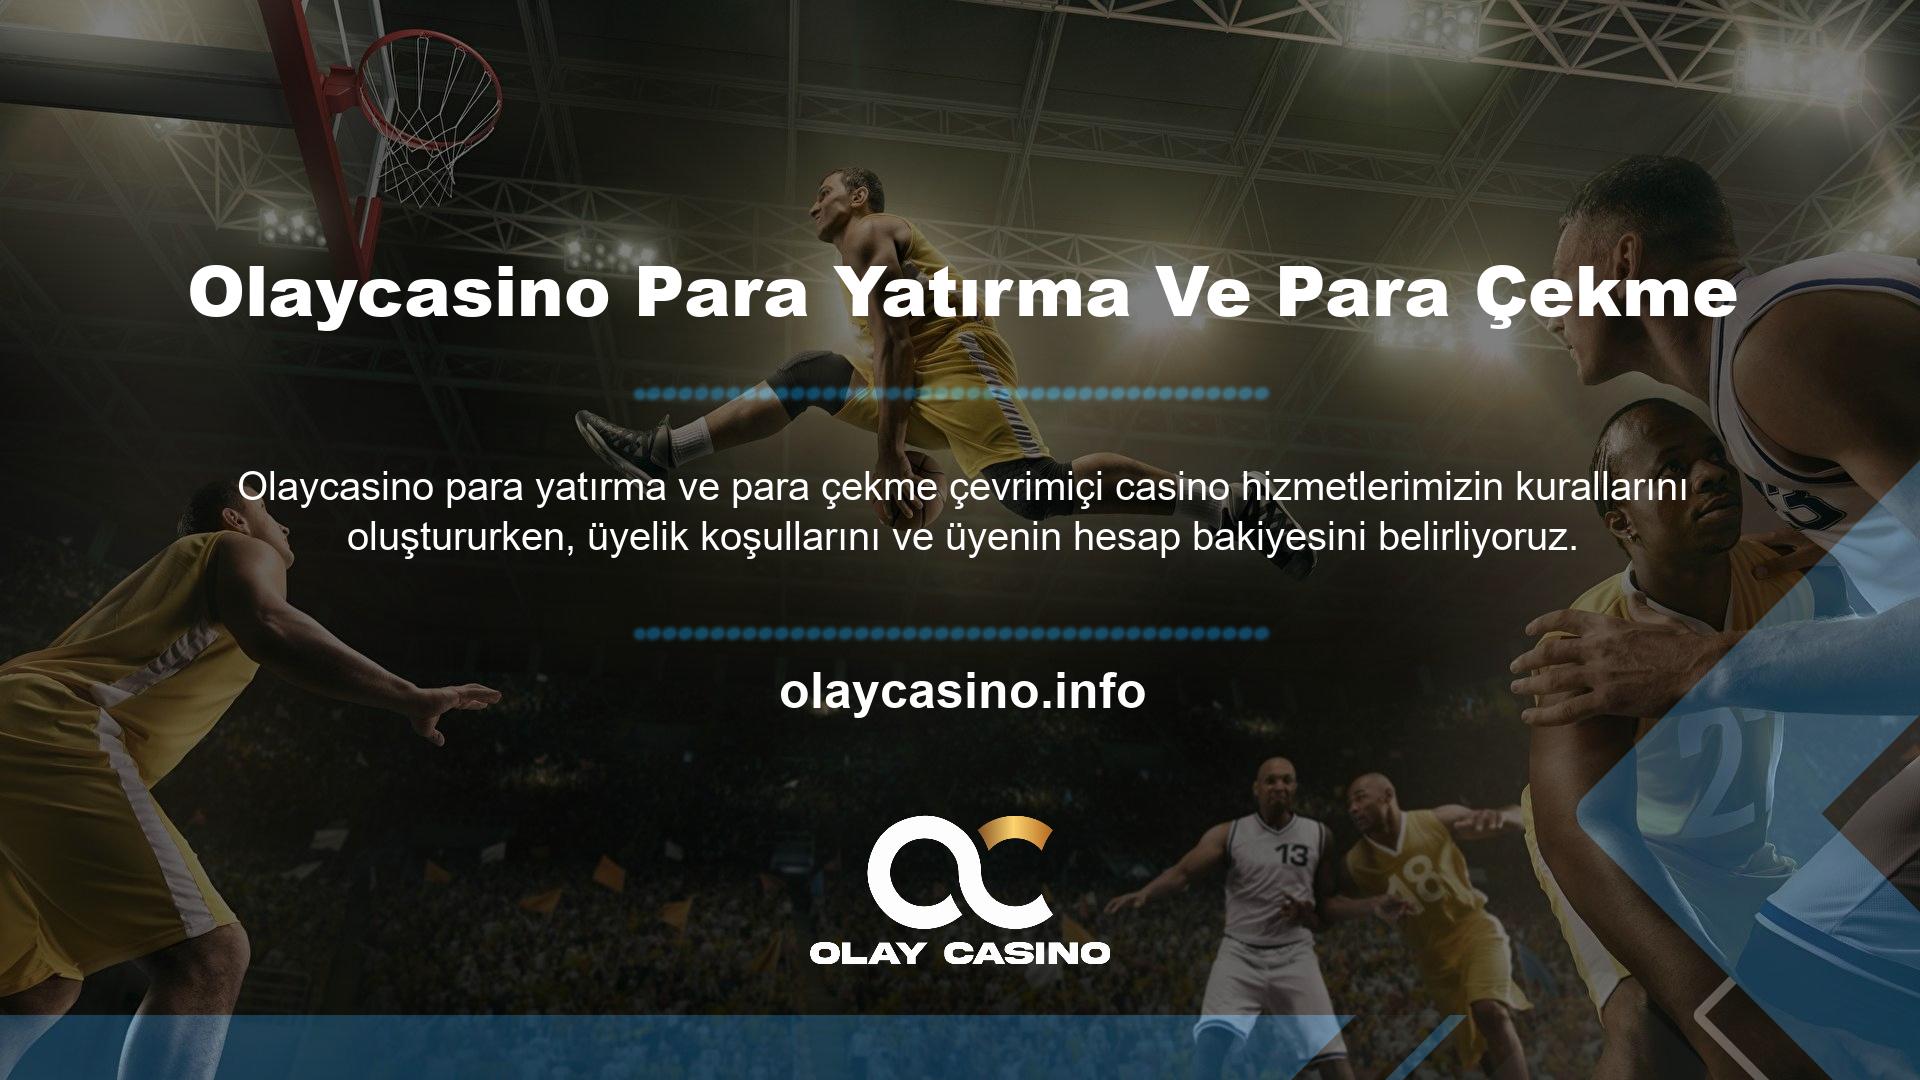 Olaycasino online casino sitesinin tüm kullanıcıları sitenin para yatırma yöntemlerini kullanarak yatırım yapabilirler